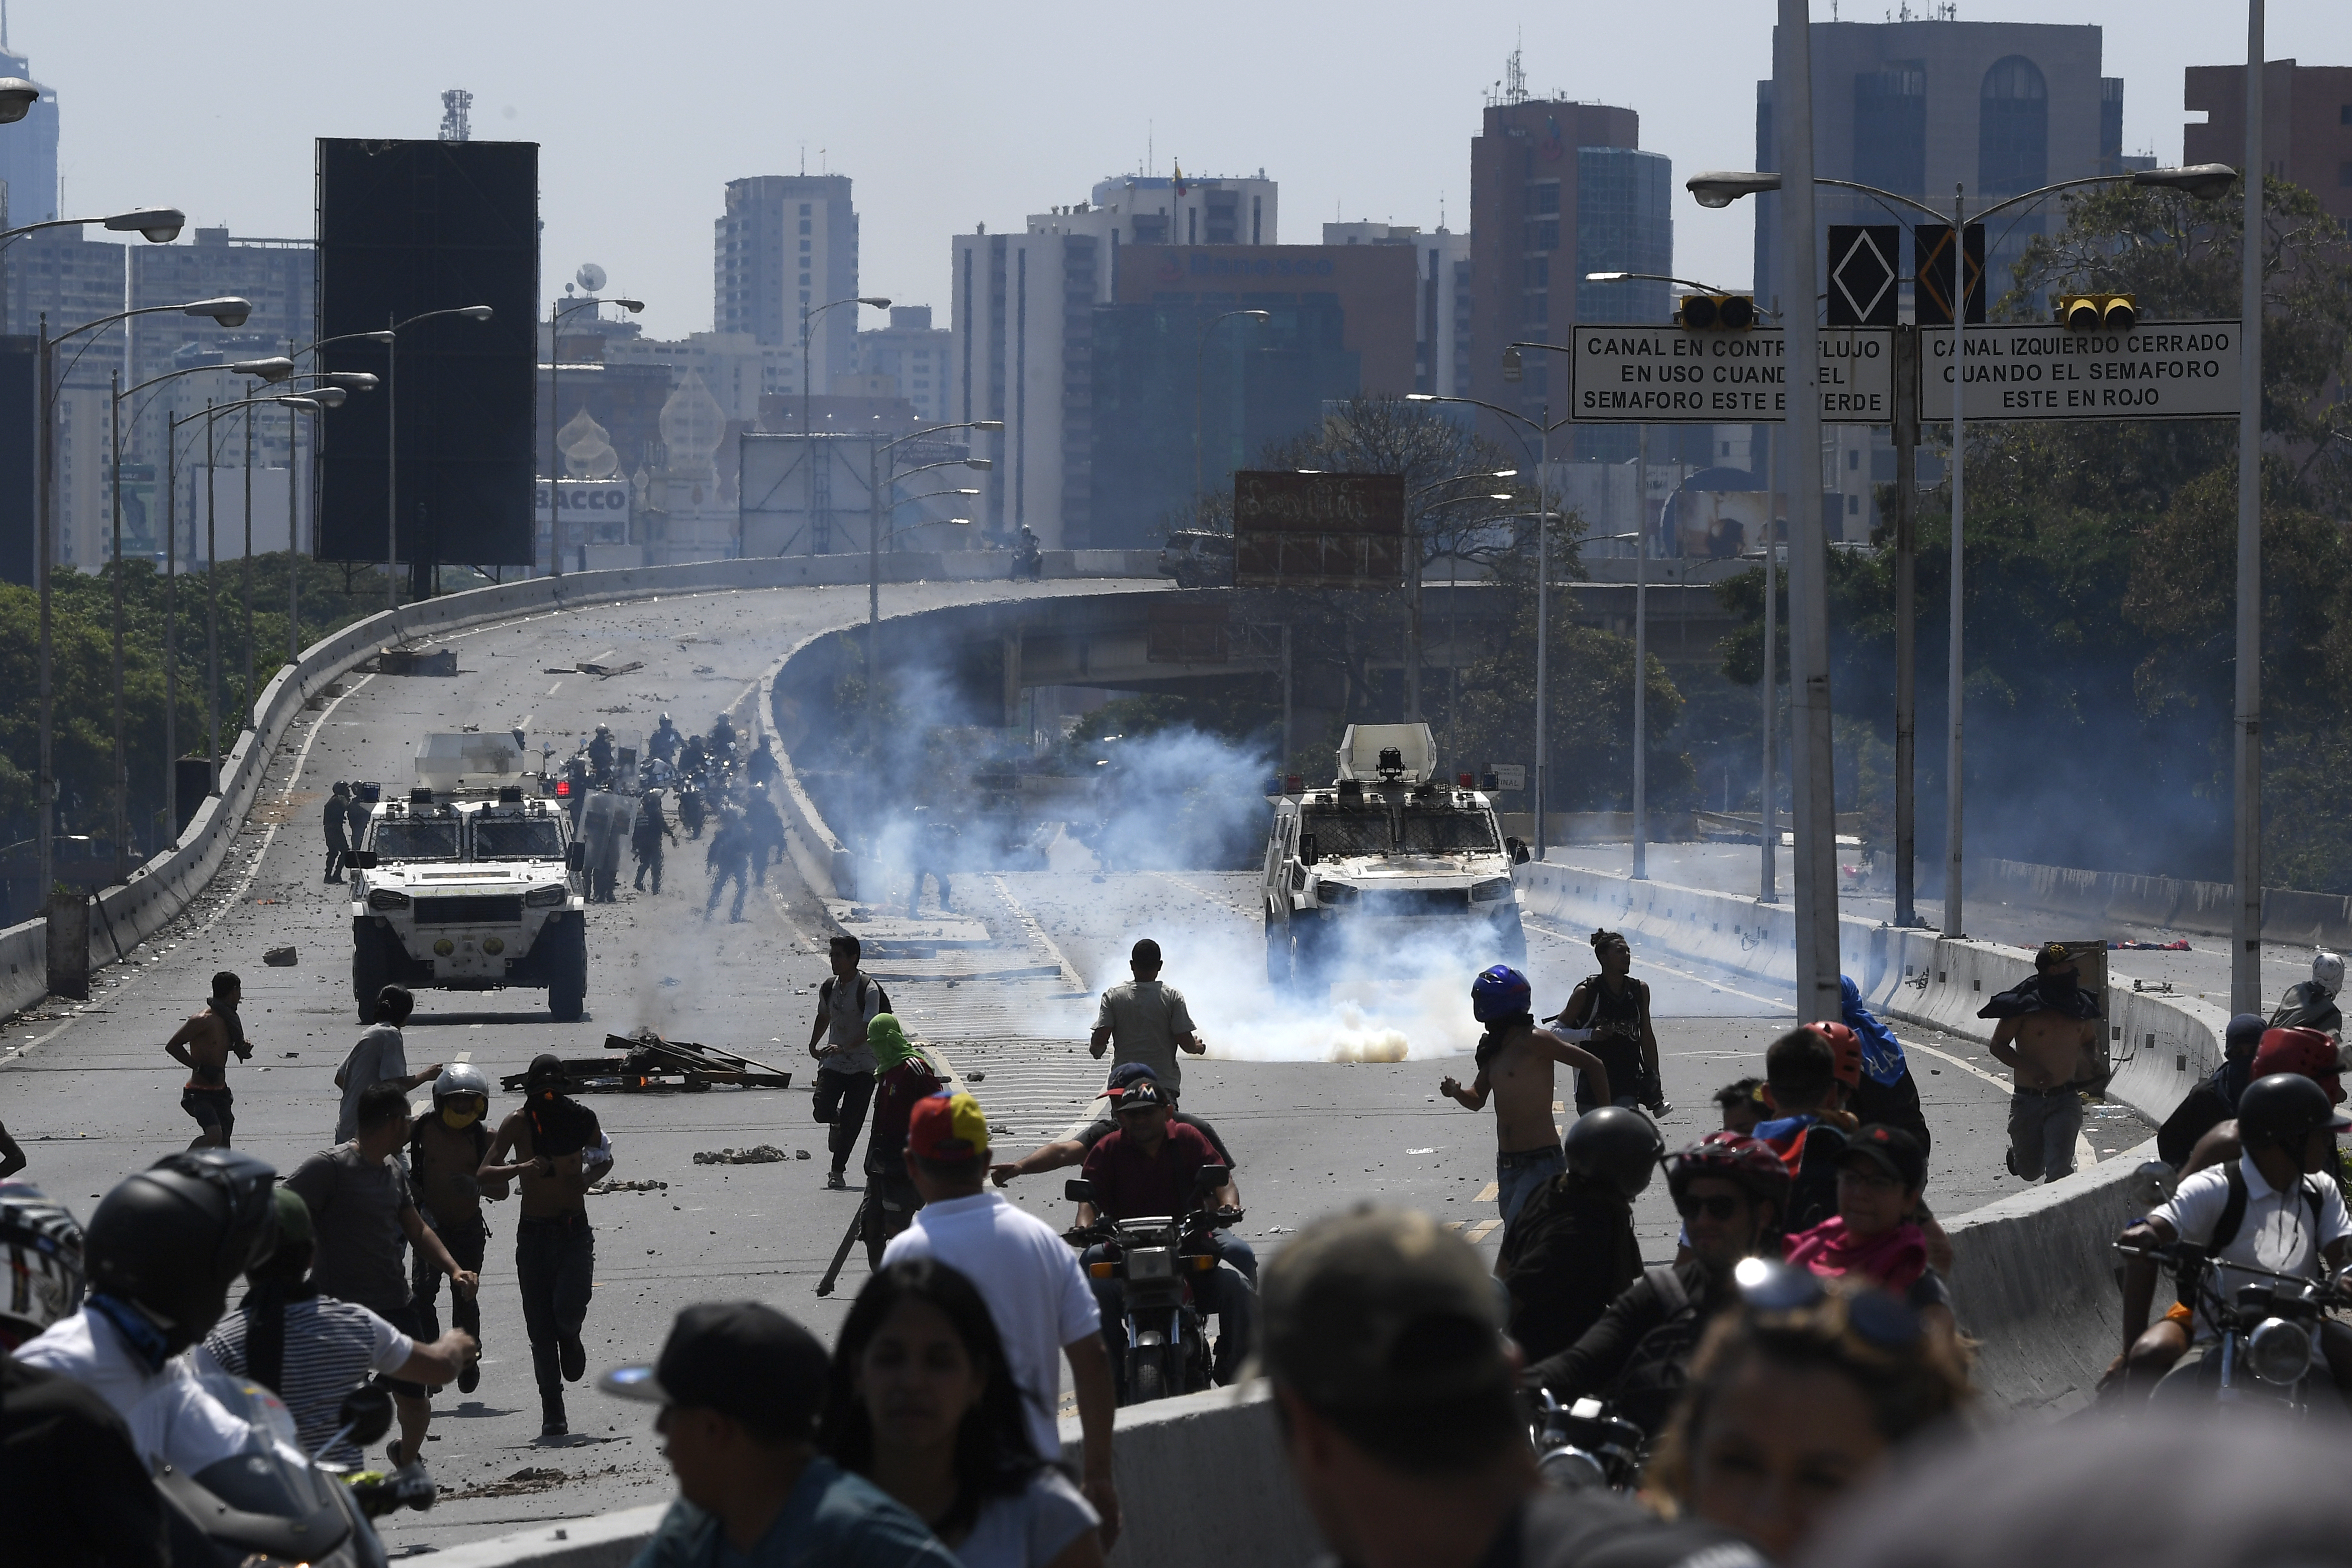 Departamento de Estado puntualiza el caos y corrupción en Venezuela a manos de Maduro (DOCUMENTO)